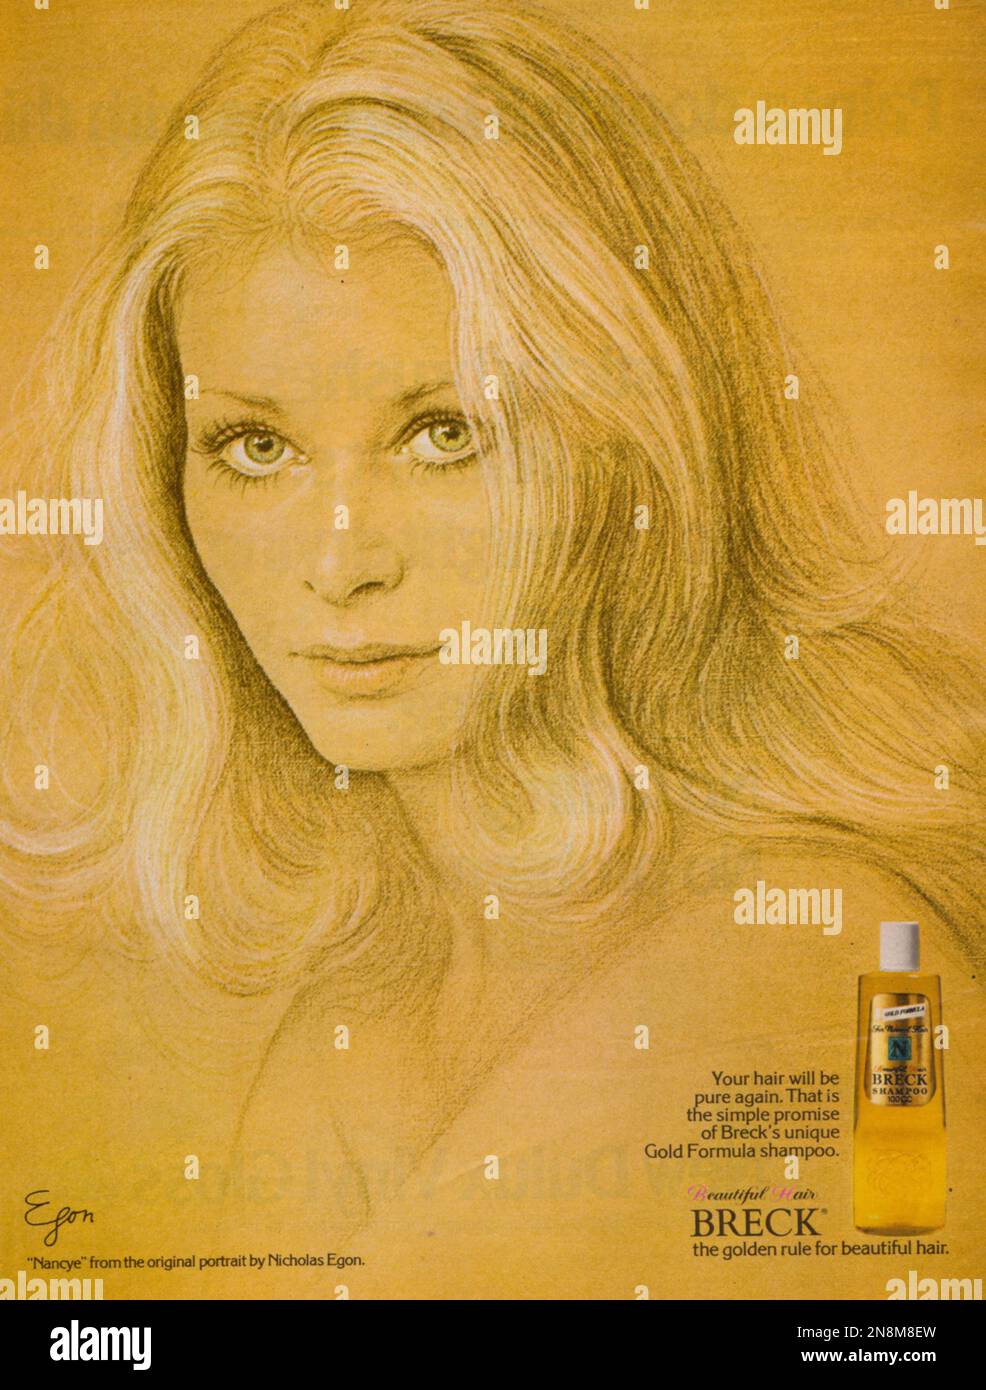 Breck Shampoo Breck's einzigartiges Gold Formula Shampoo, Breck Shampoo Magazin Anzeige 1981 Stockfoto